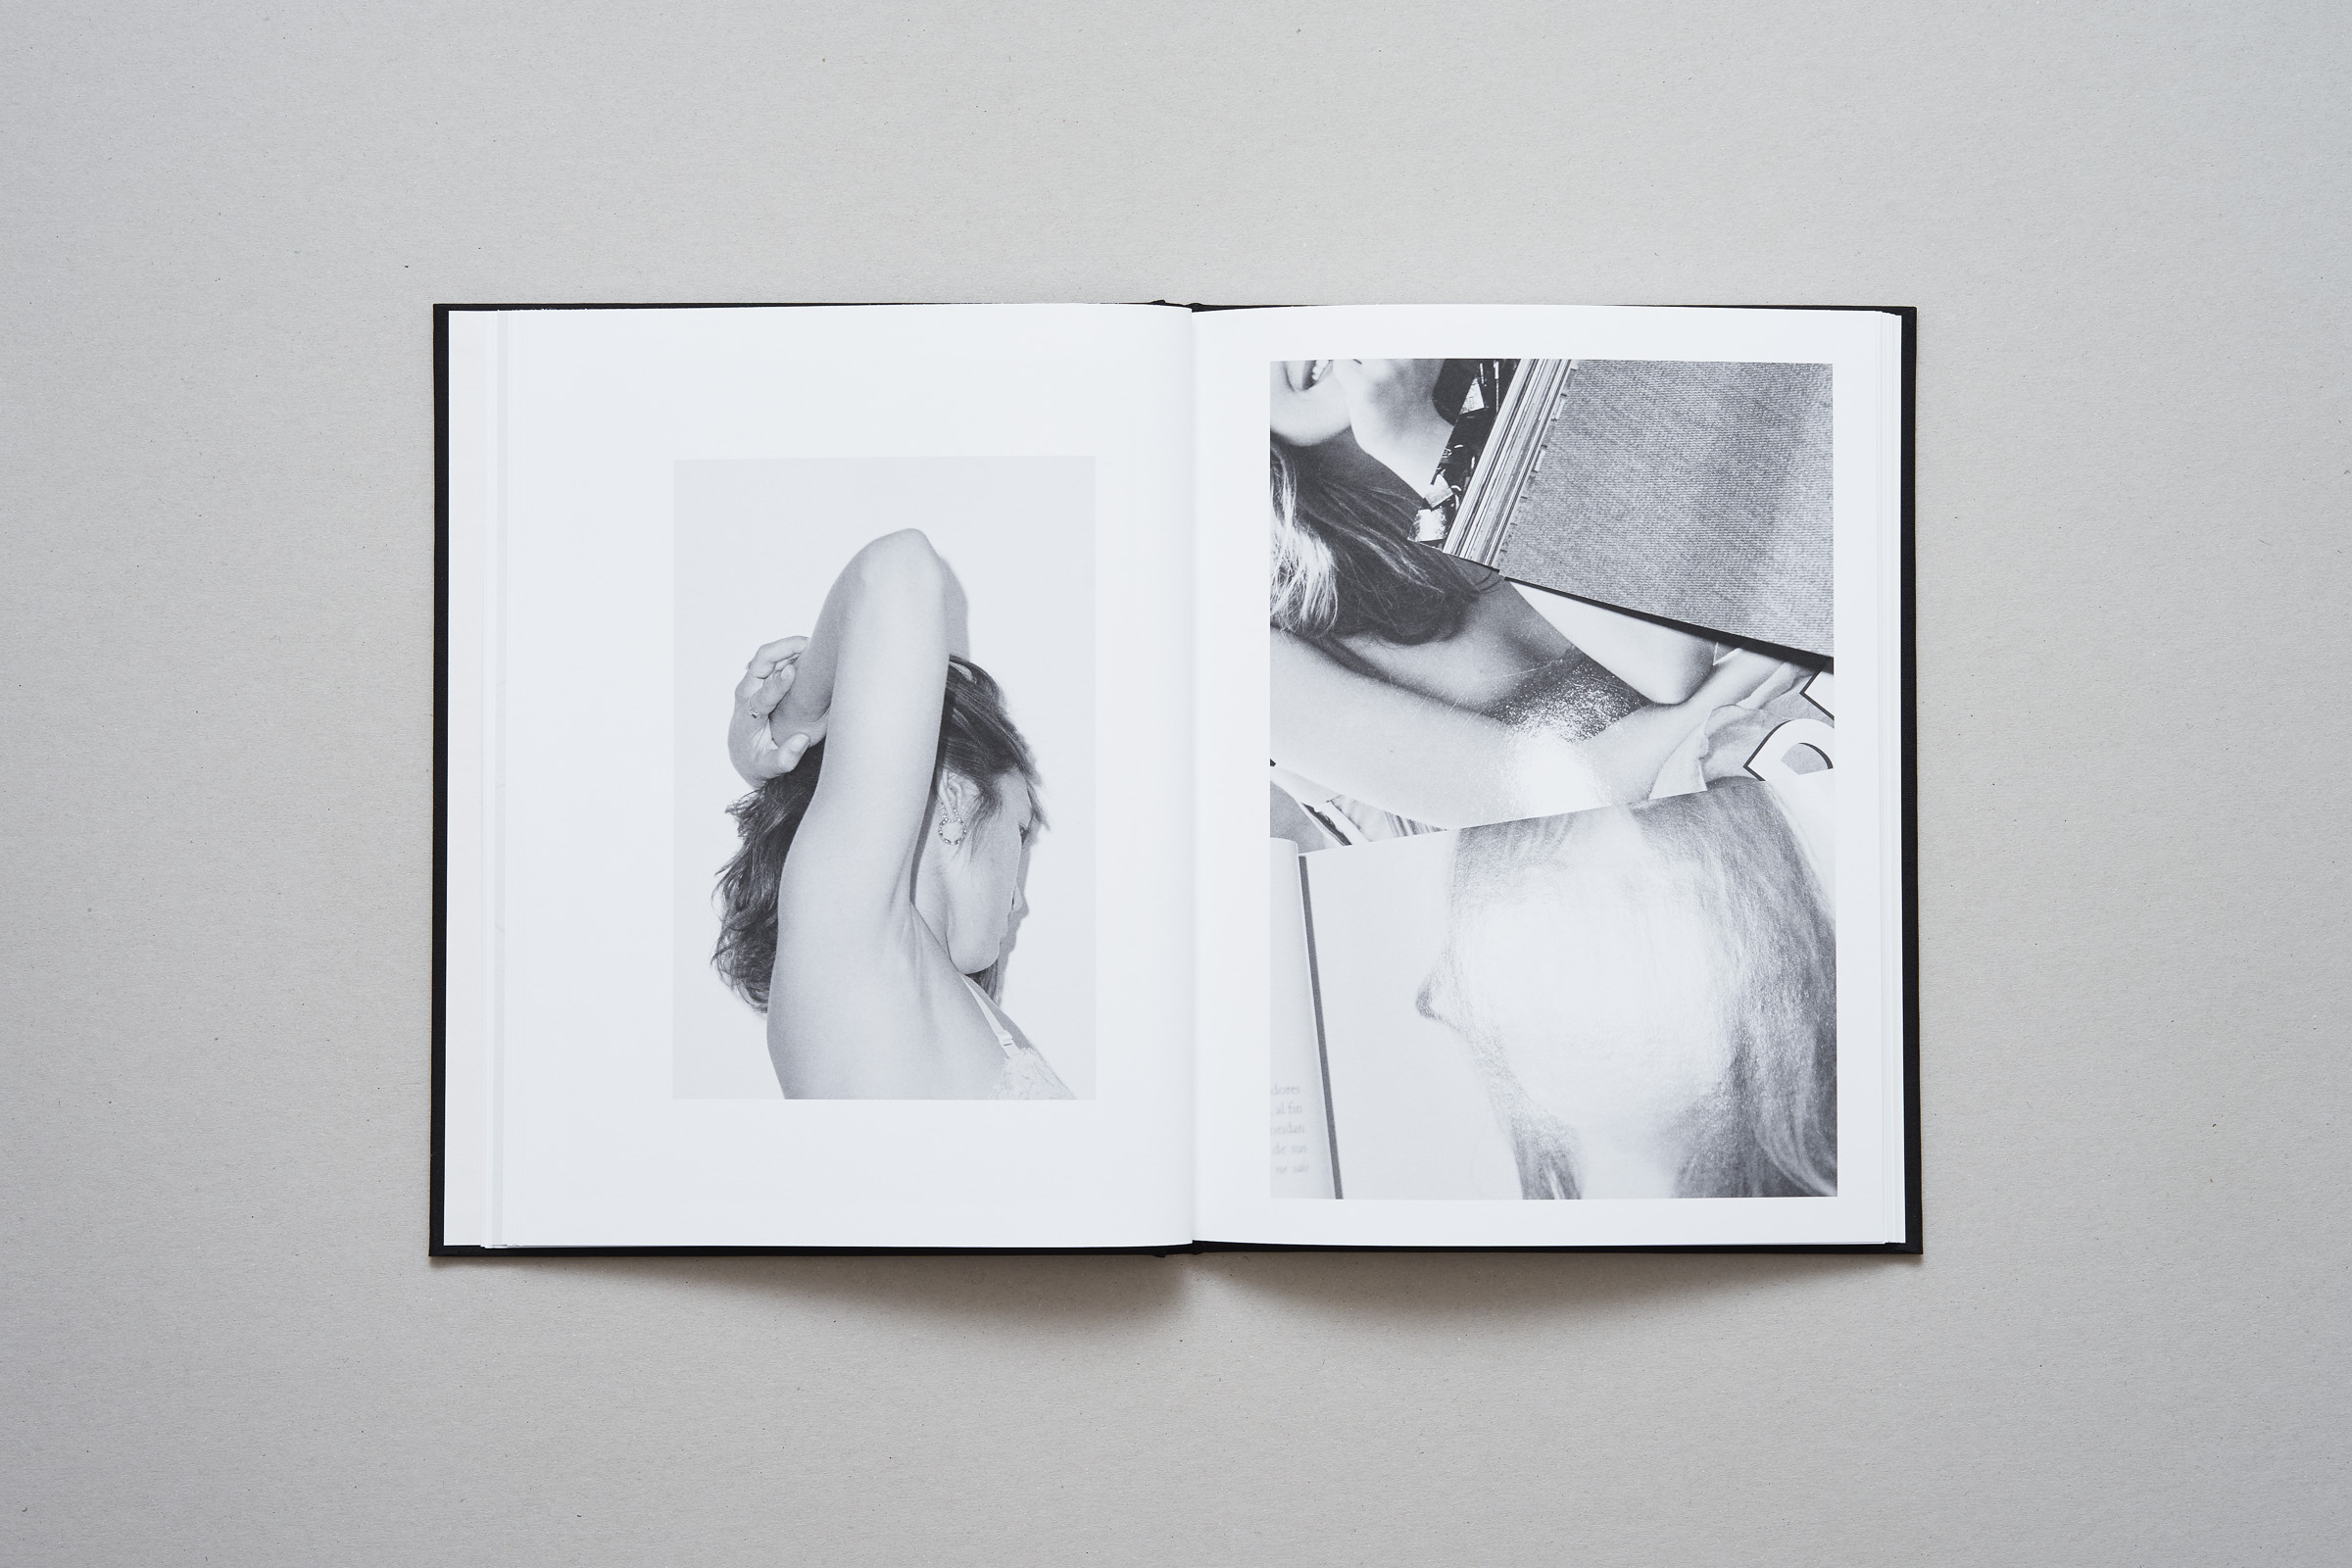 Vincent Ferrané — Iconography — Book